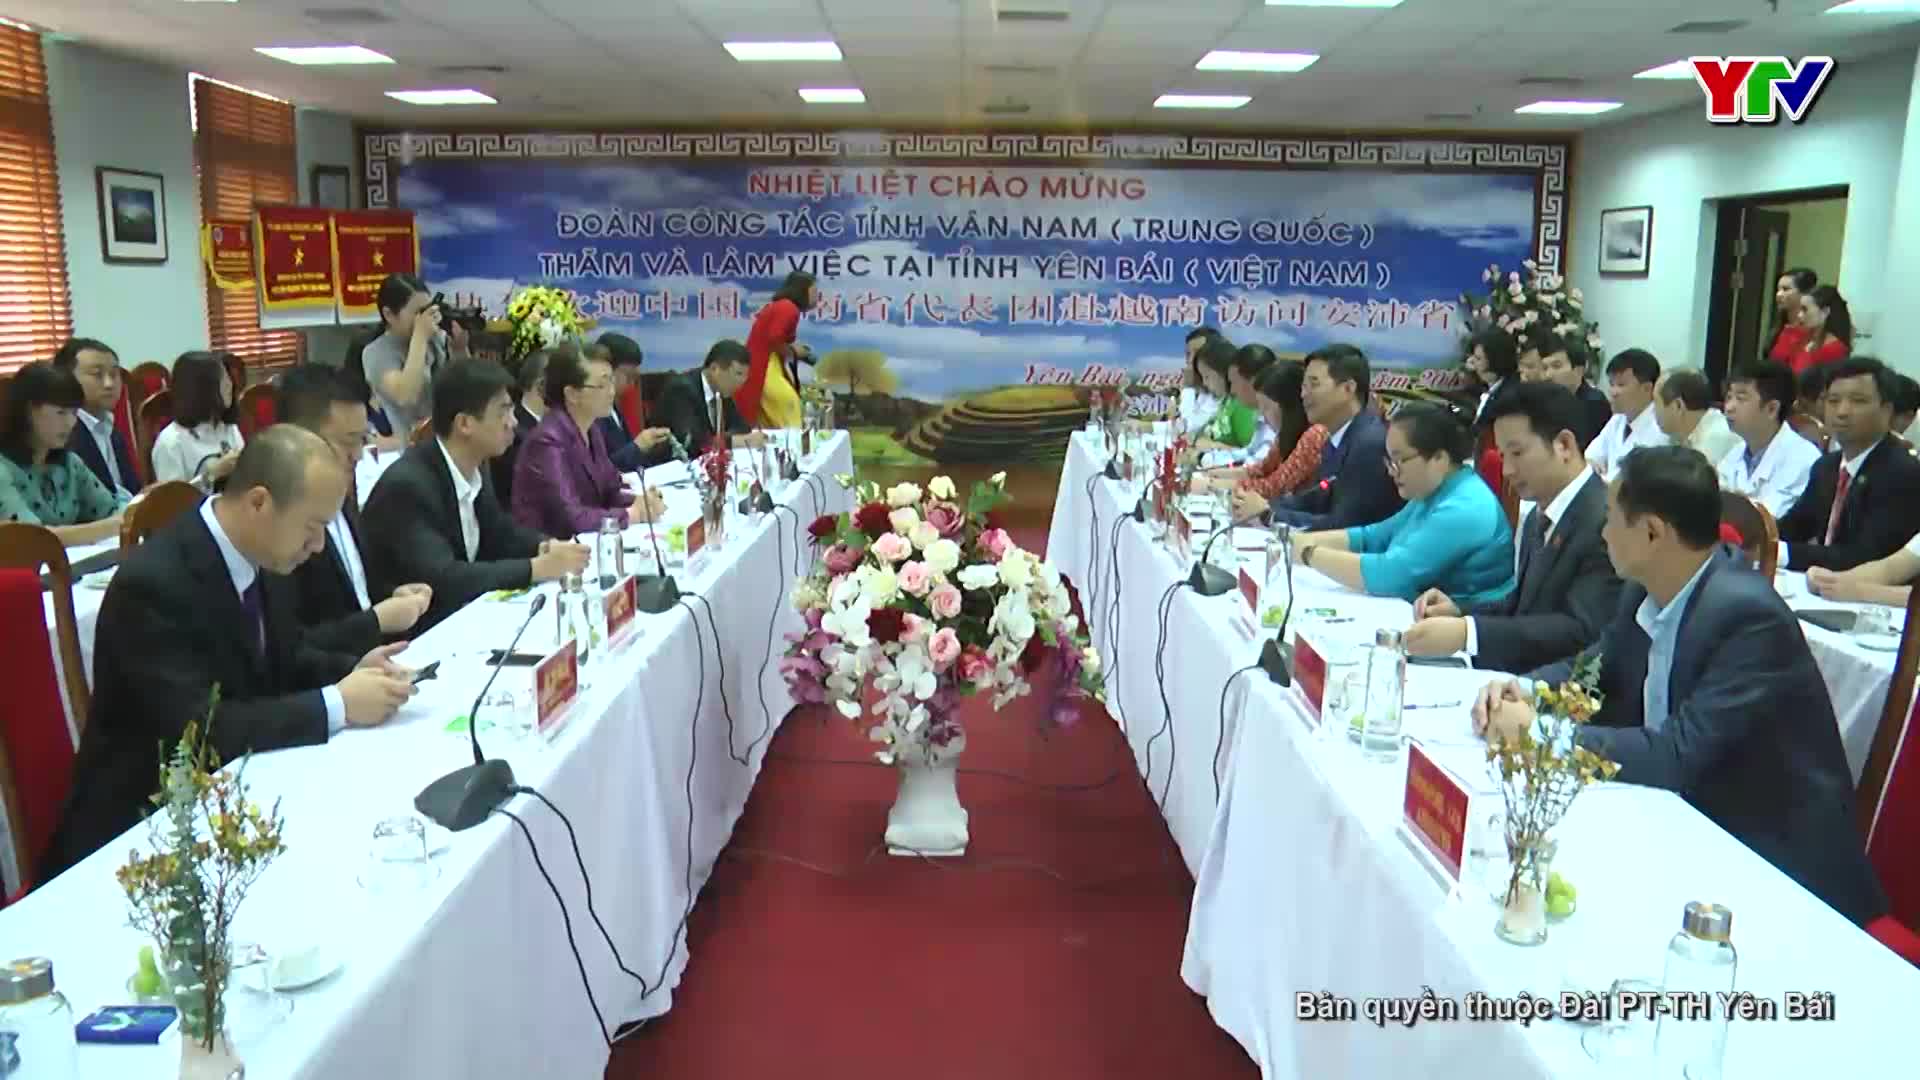 Hai tỉnh Yên Bái - Vân Nam (Trung Quốc) hợp tác triển khai hoạt động "Hành trình ánh sáng"